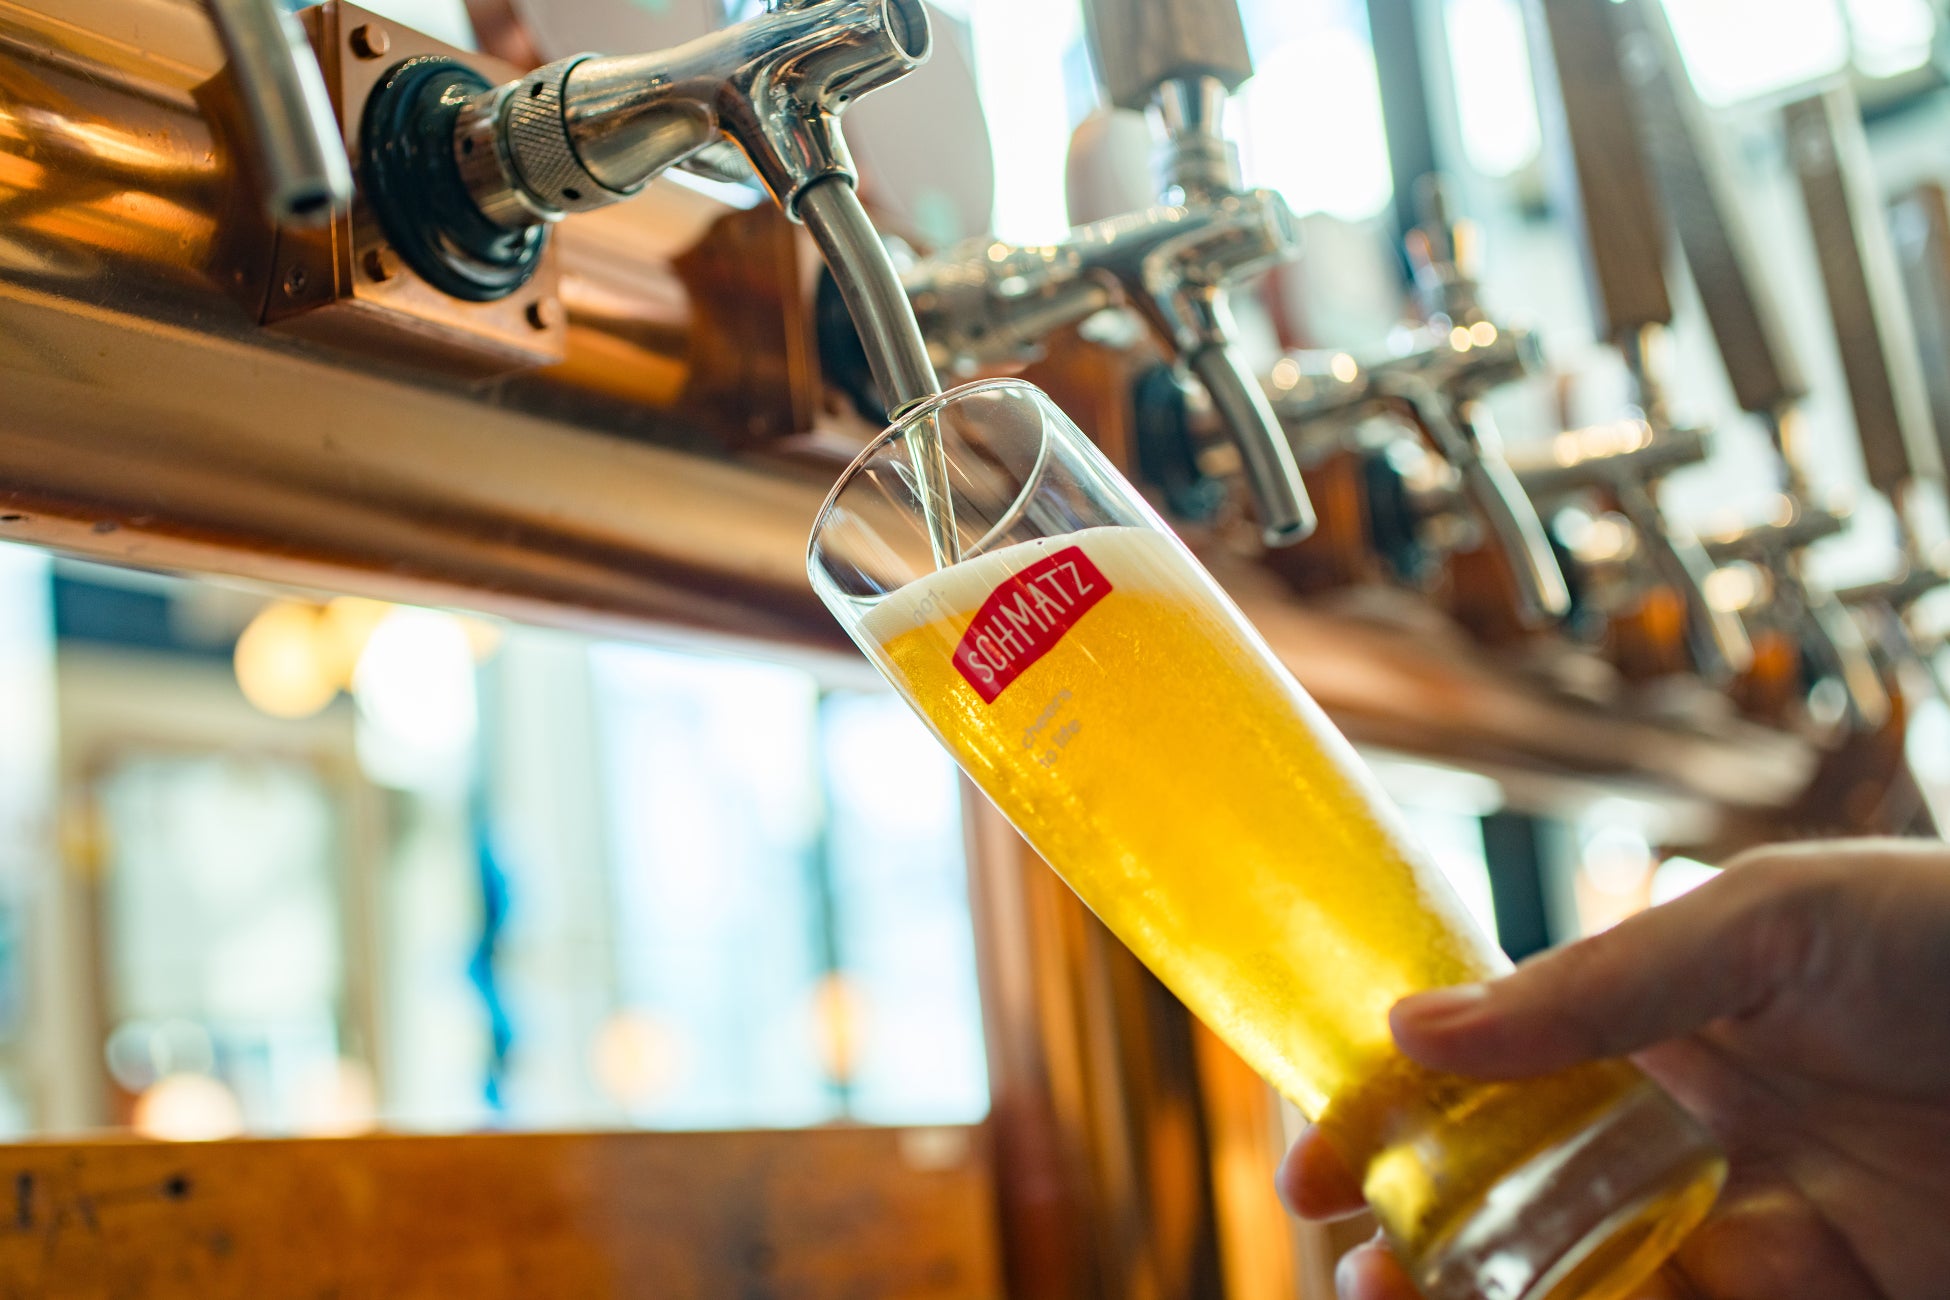 【シュマッツ】ドイツクラフトビールのSchmatz (シュマッツ)が「ラントリップ」とコラボ企画を開始。月30km走るとレストランで「シュマッツ」のオリジナルビールが1杯無料